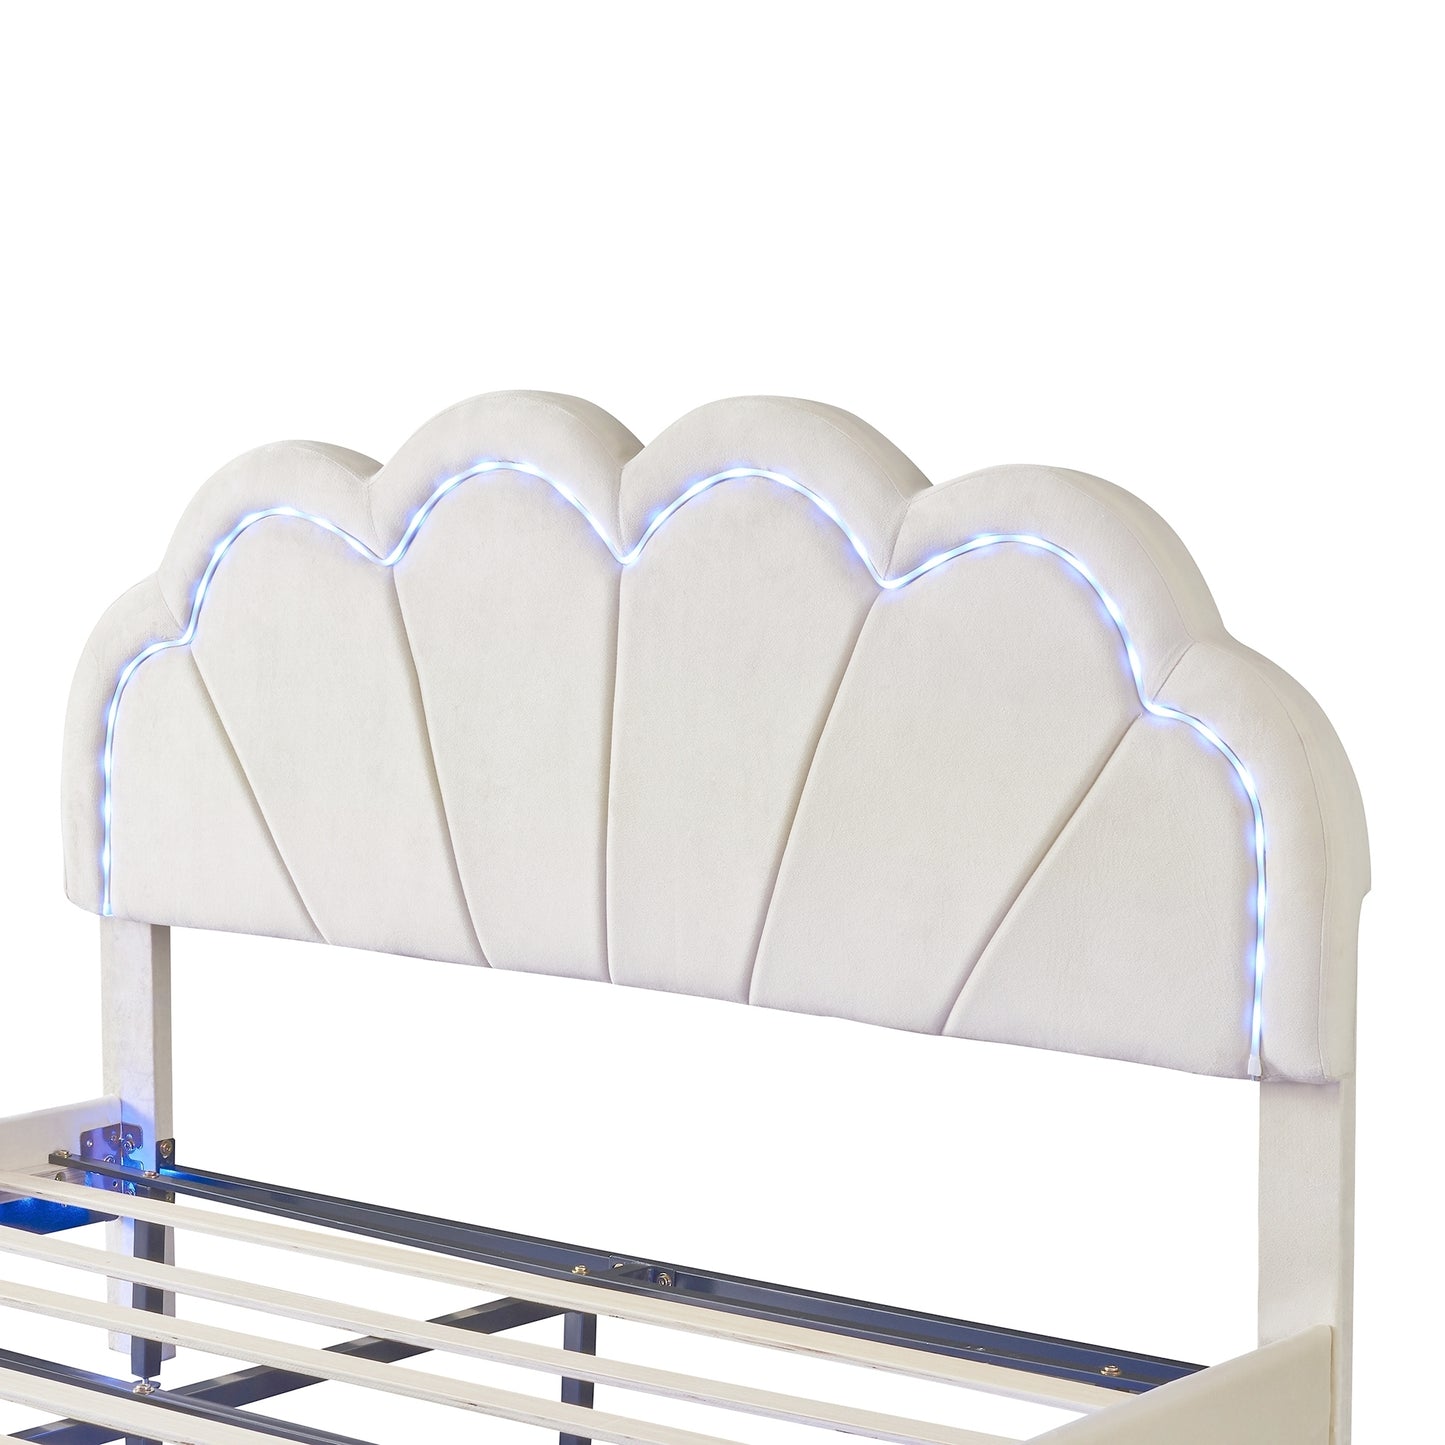 Queen Upholstered Smart LED Bed Frame with Elegant Flowers Headboard,Floating Velvet Platform LED Bed with Wooden Slats Support,Beige